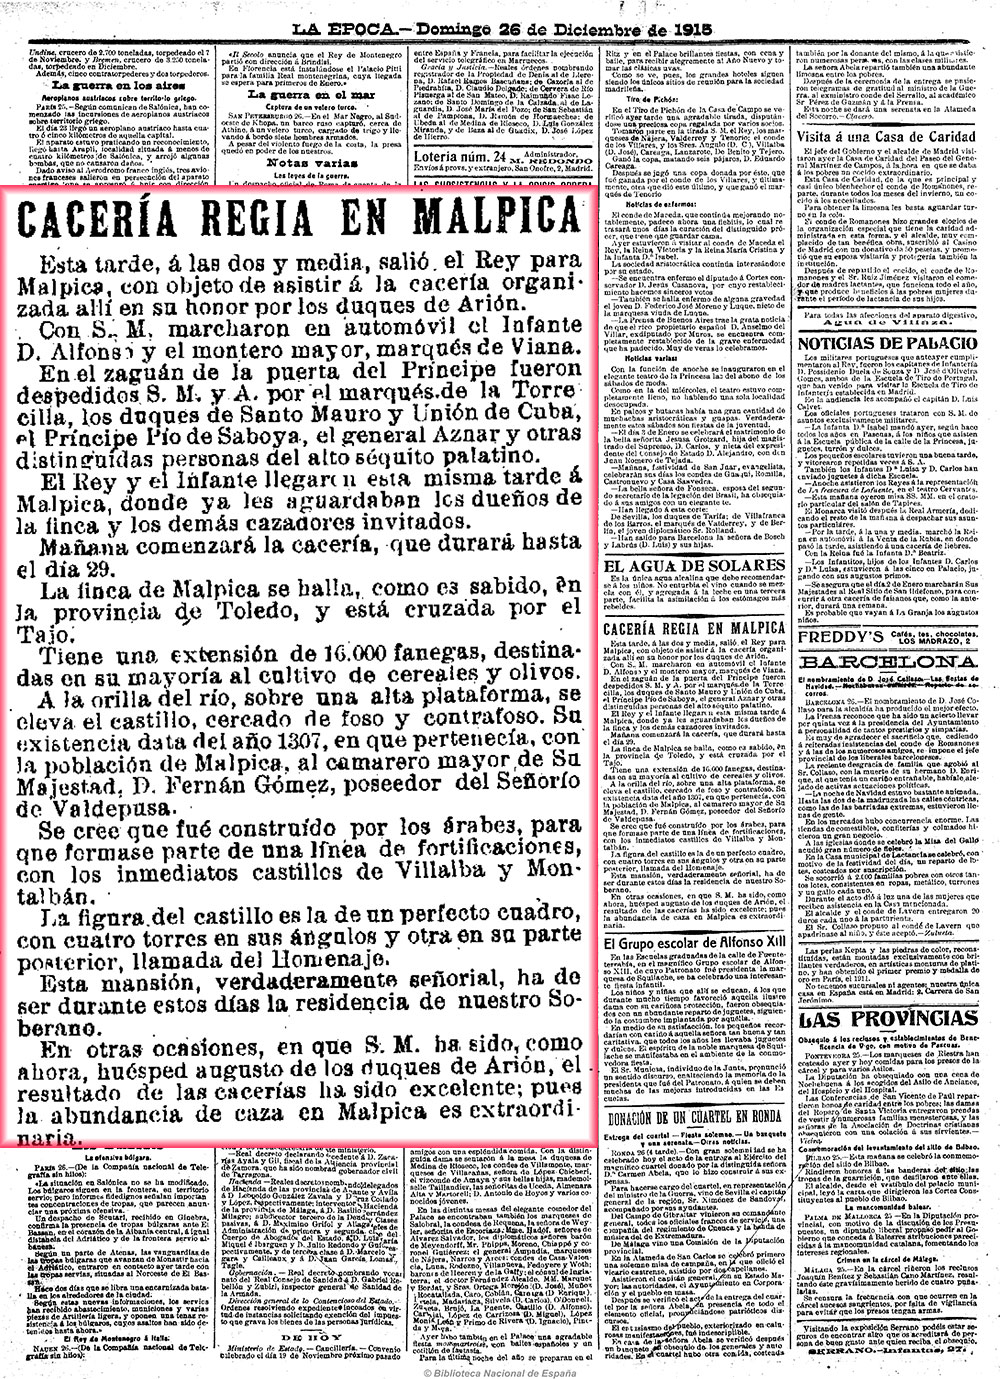 La Época 26-12-1915, página 2. Otra cacería regia